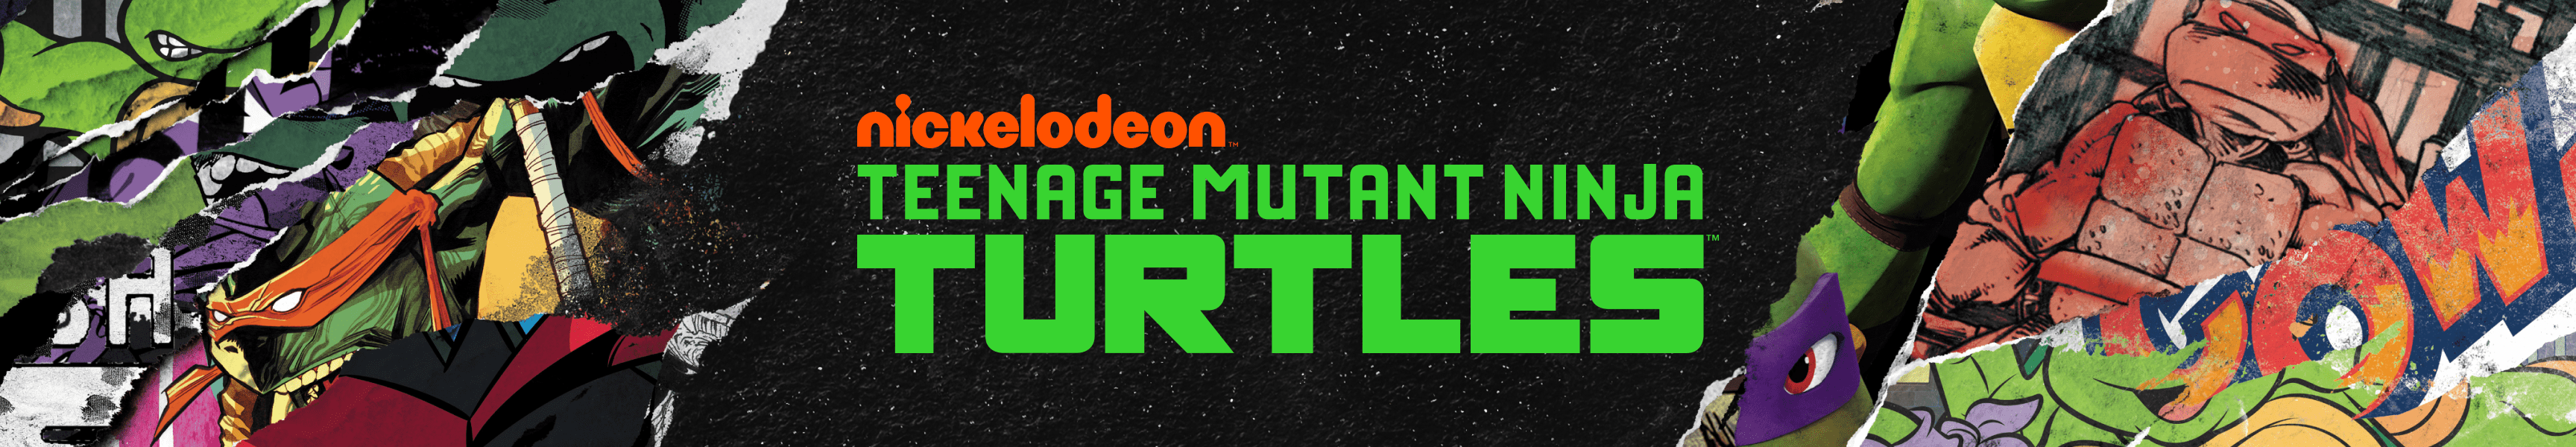 Teenage Mutant Ninja Turtles Accesorios